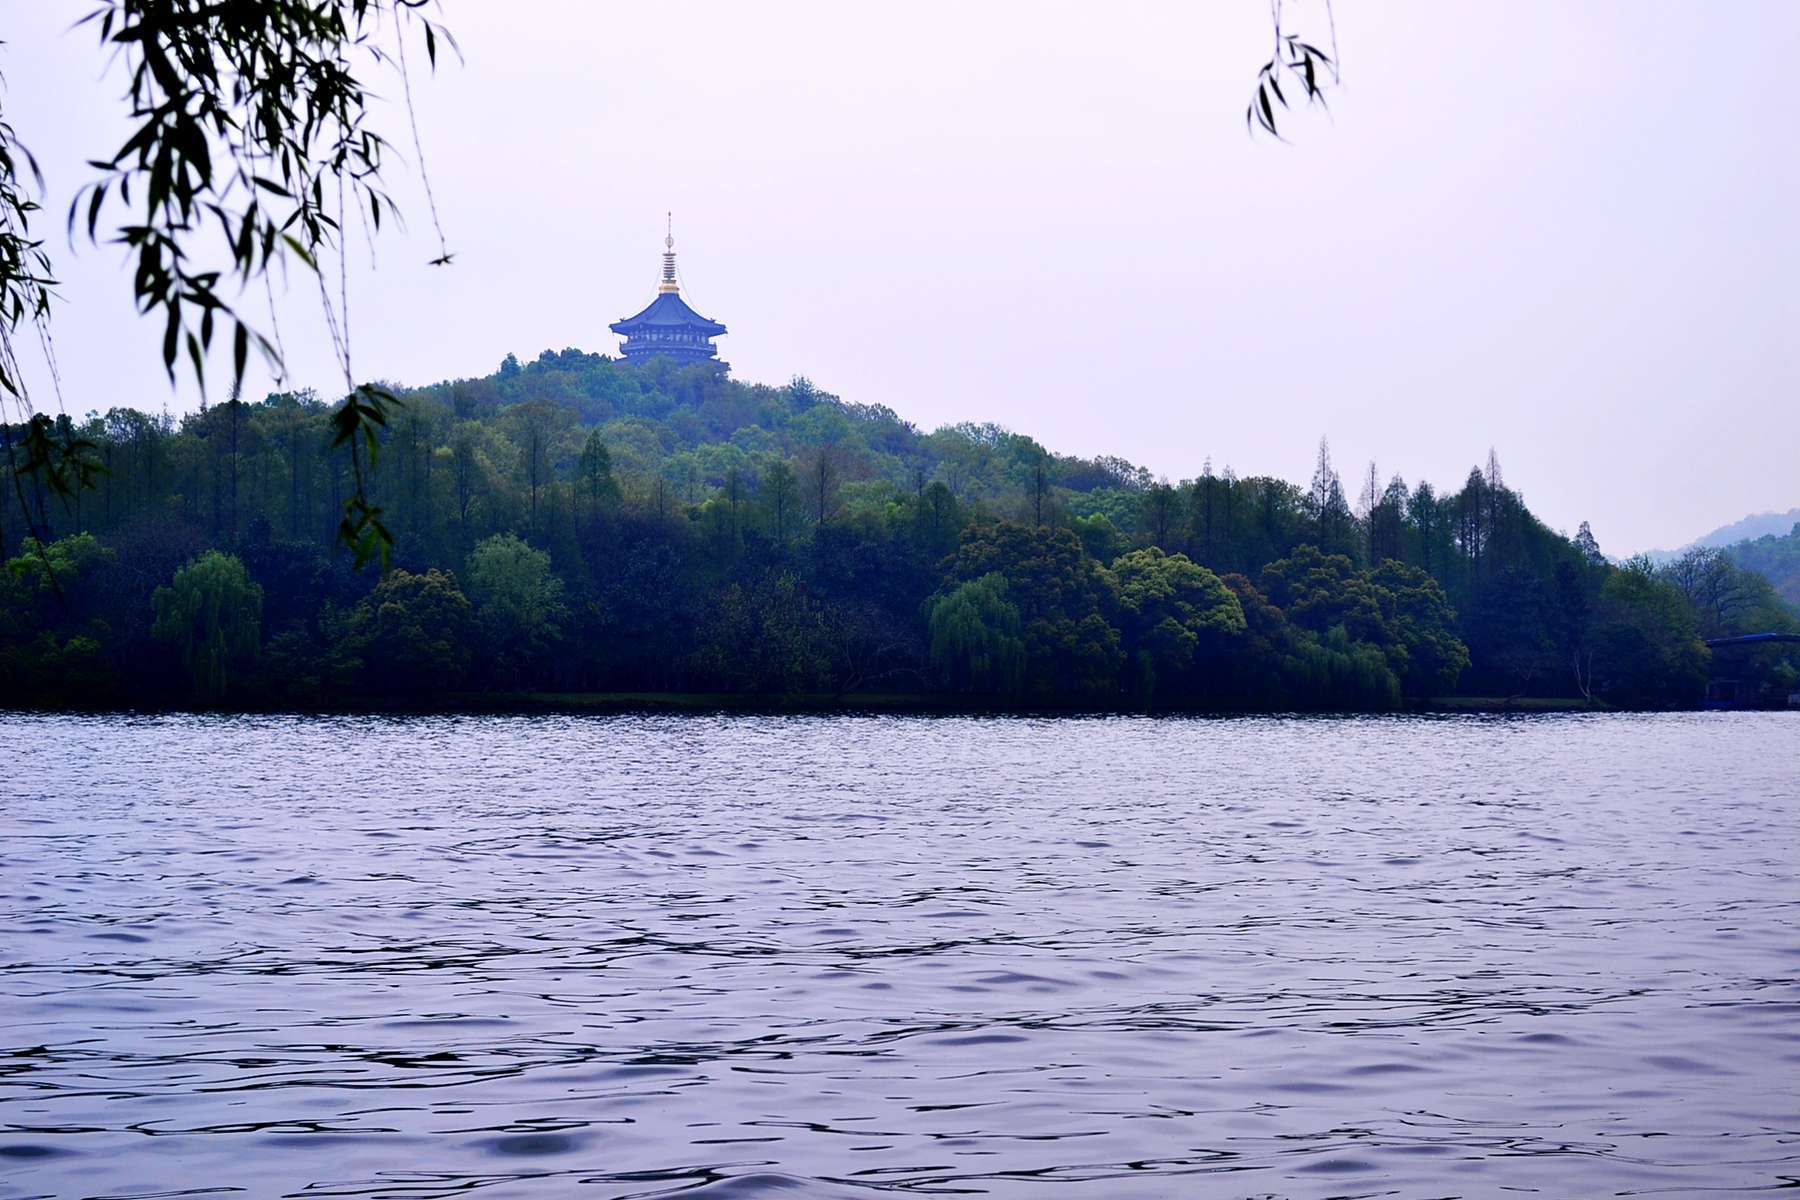 苏堤春晓作为杭州西湖十大景区之一,可以说是名副其实的美景!